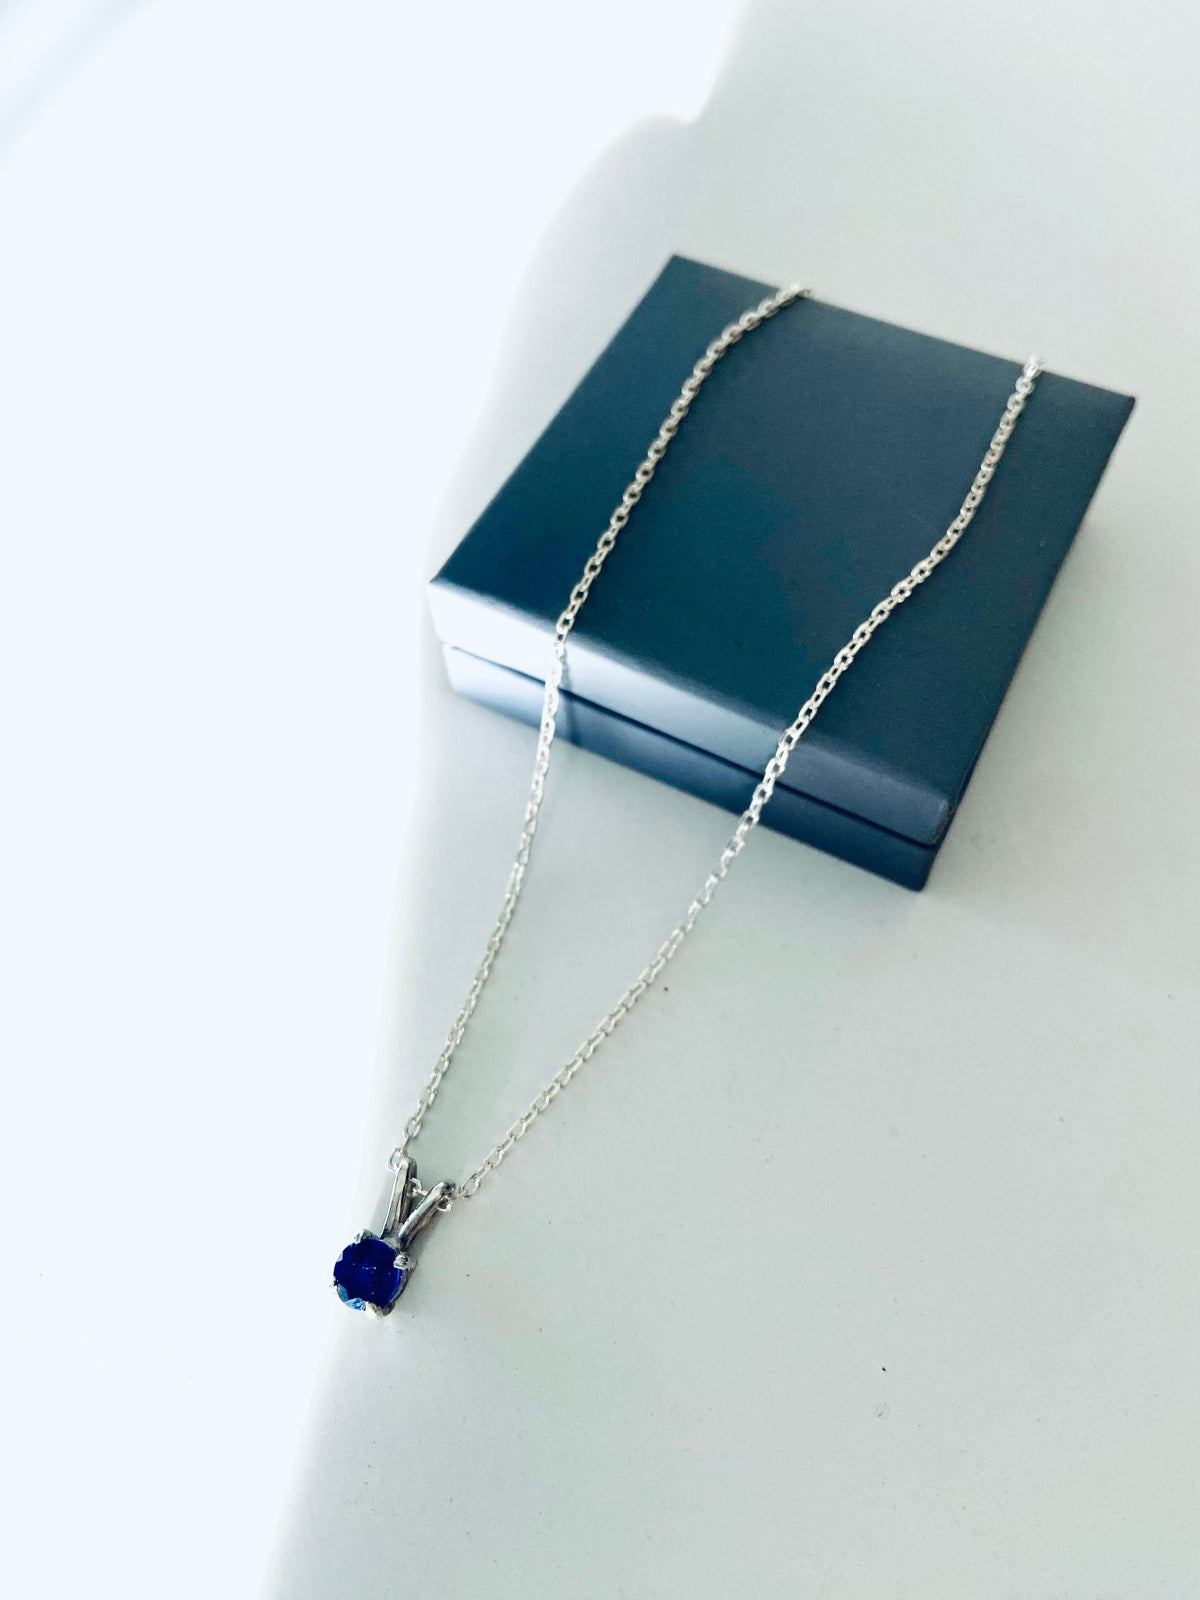 Collier en argent avec pendentif en Saphir bleu naturel, montée en serti griffes pour femme